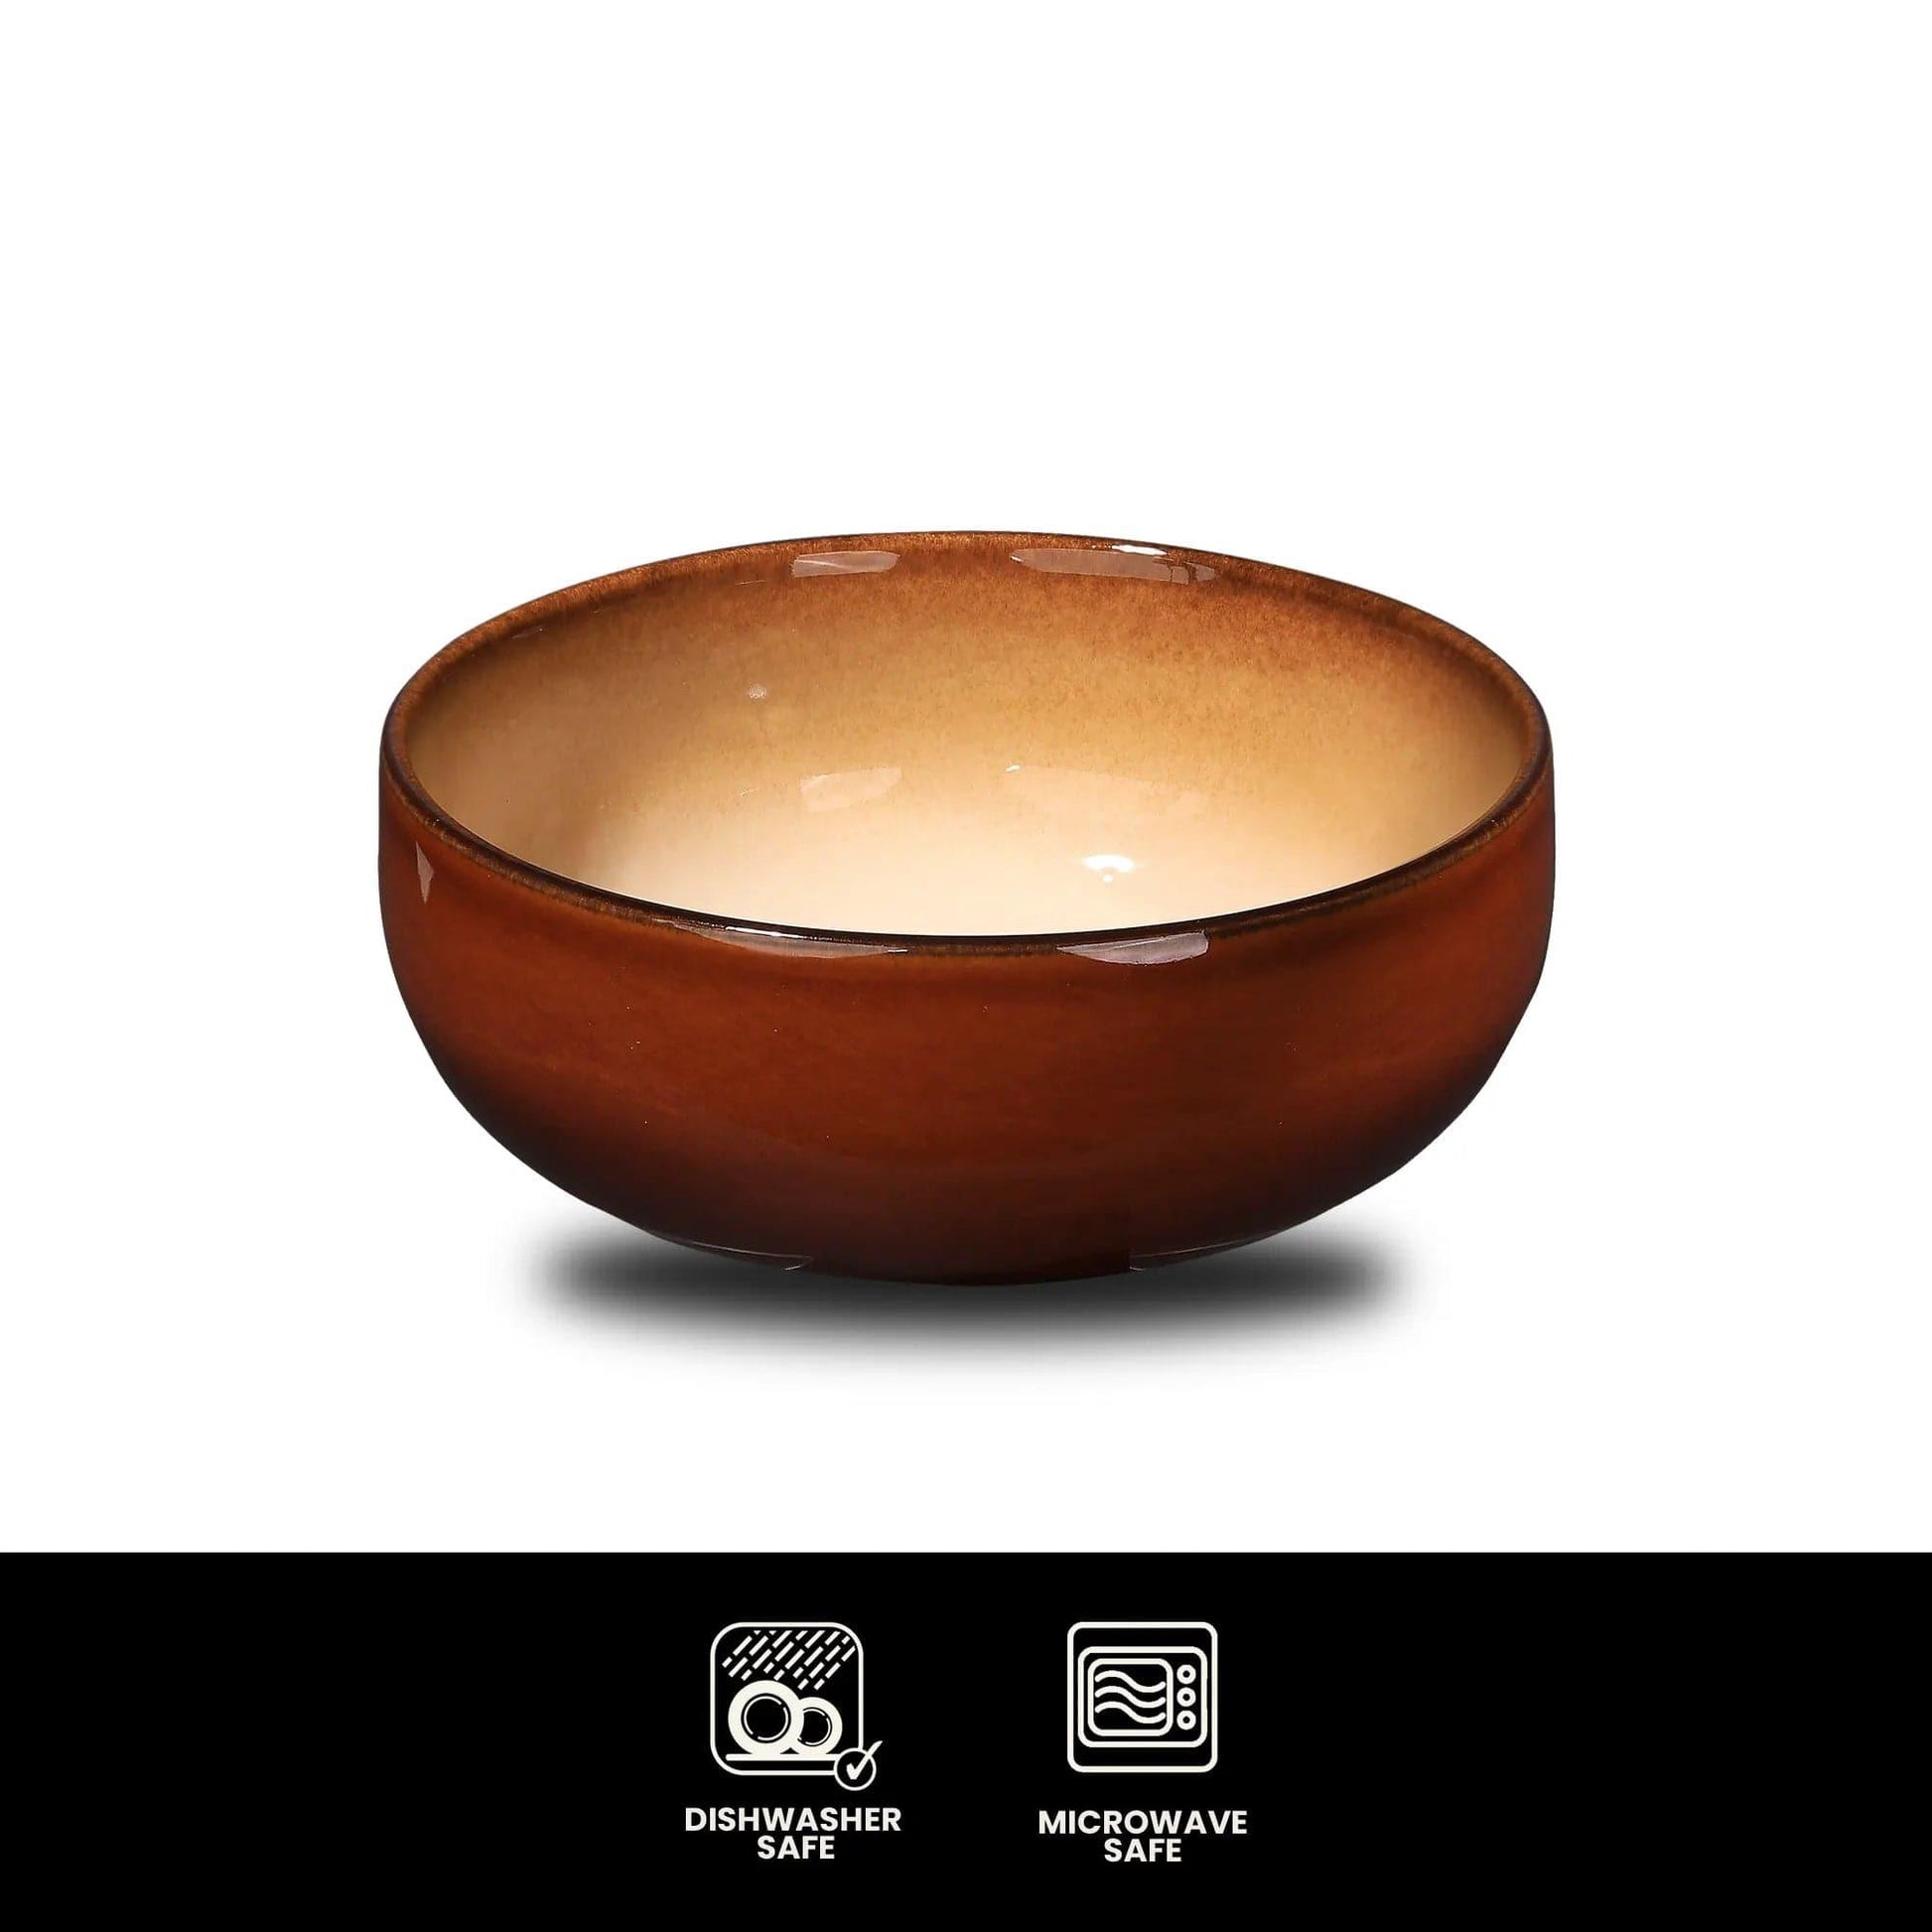 Furtino England Festive 5.9"/15cm Honey Stoneware Round Bowl - HorecaStore